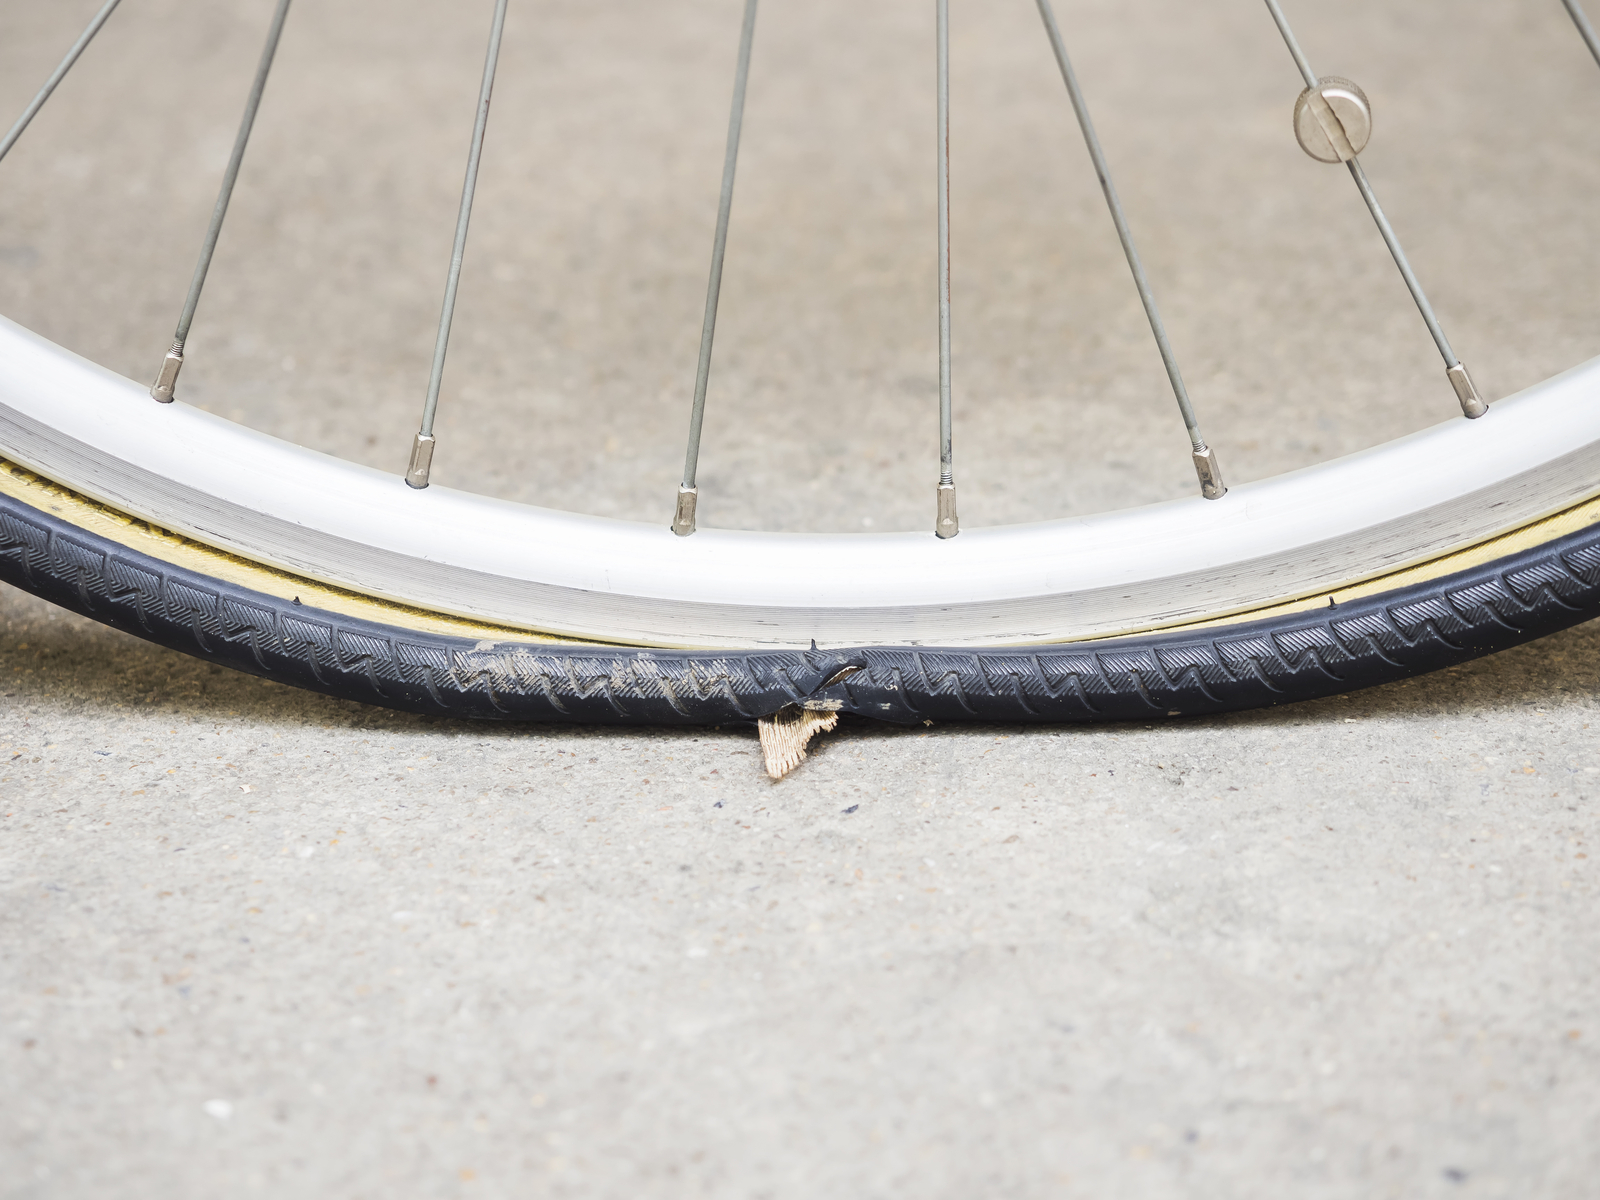 aanvaardbaar het is nutteloos Nadeel Reparatie aan je fiets? Doe het zelf! | Fietsen123